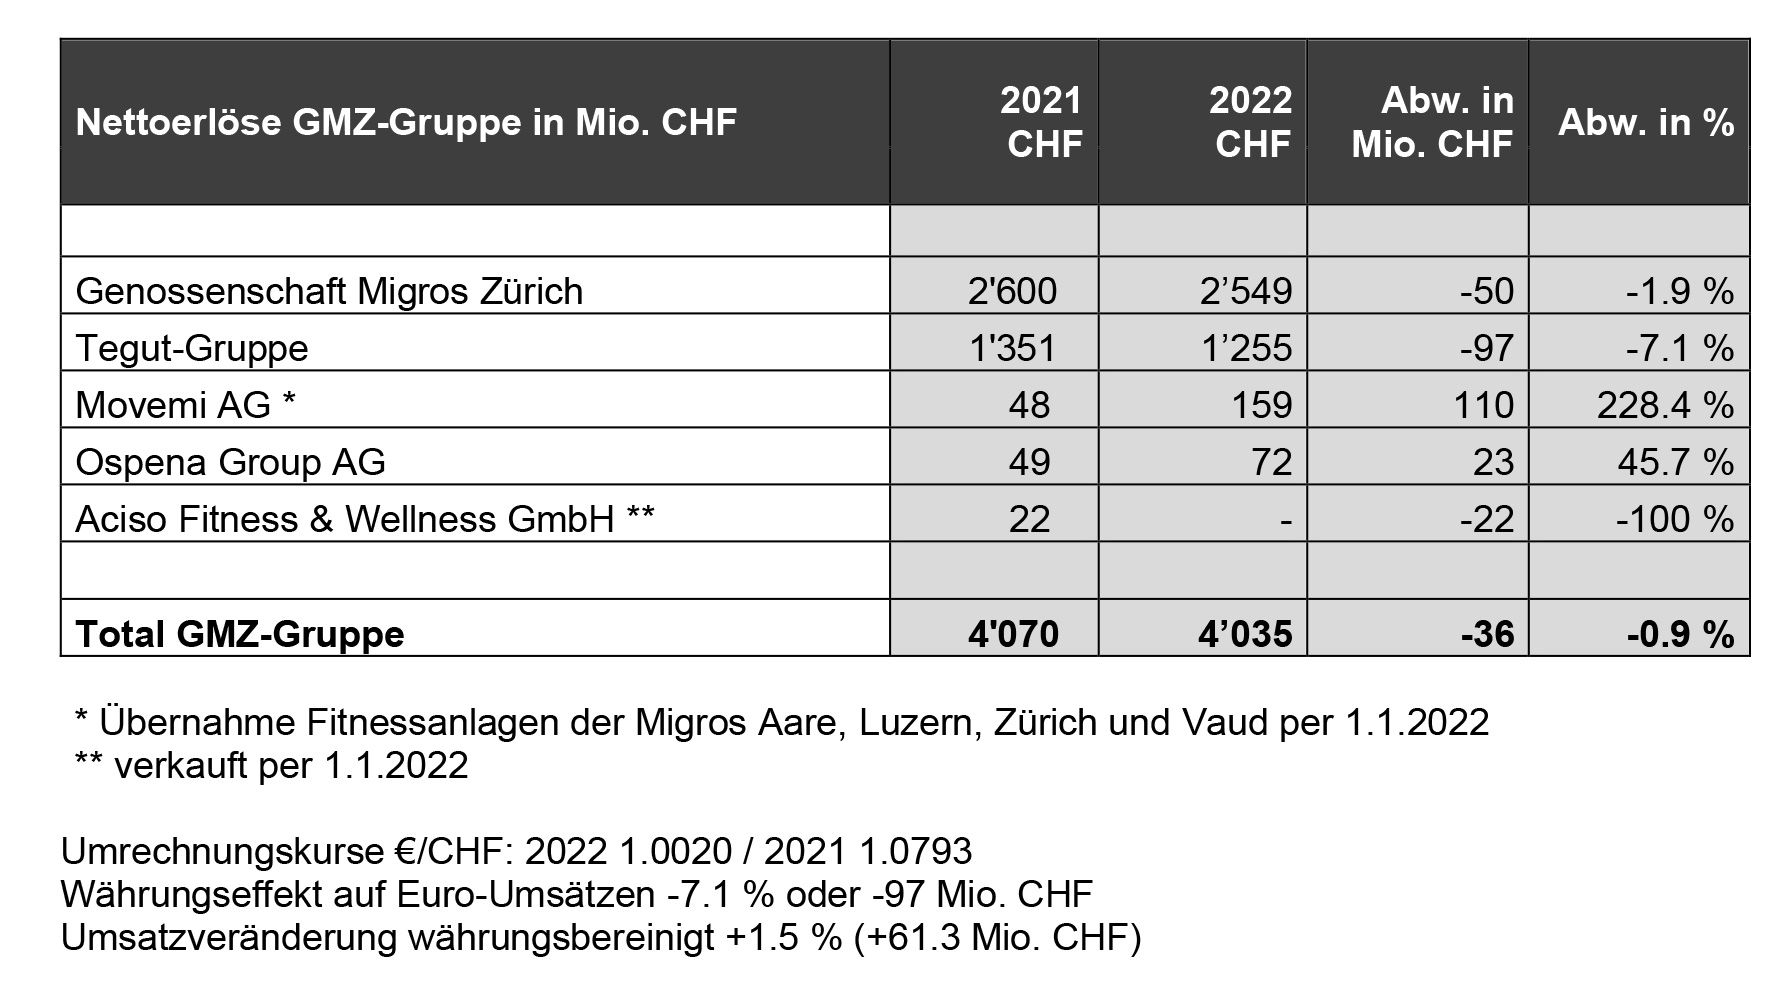 Nettoerlöse GMZ-Gruppe 2022